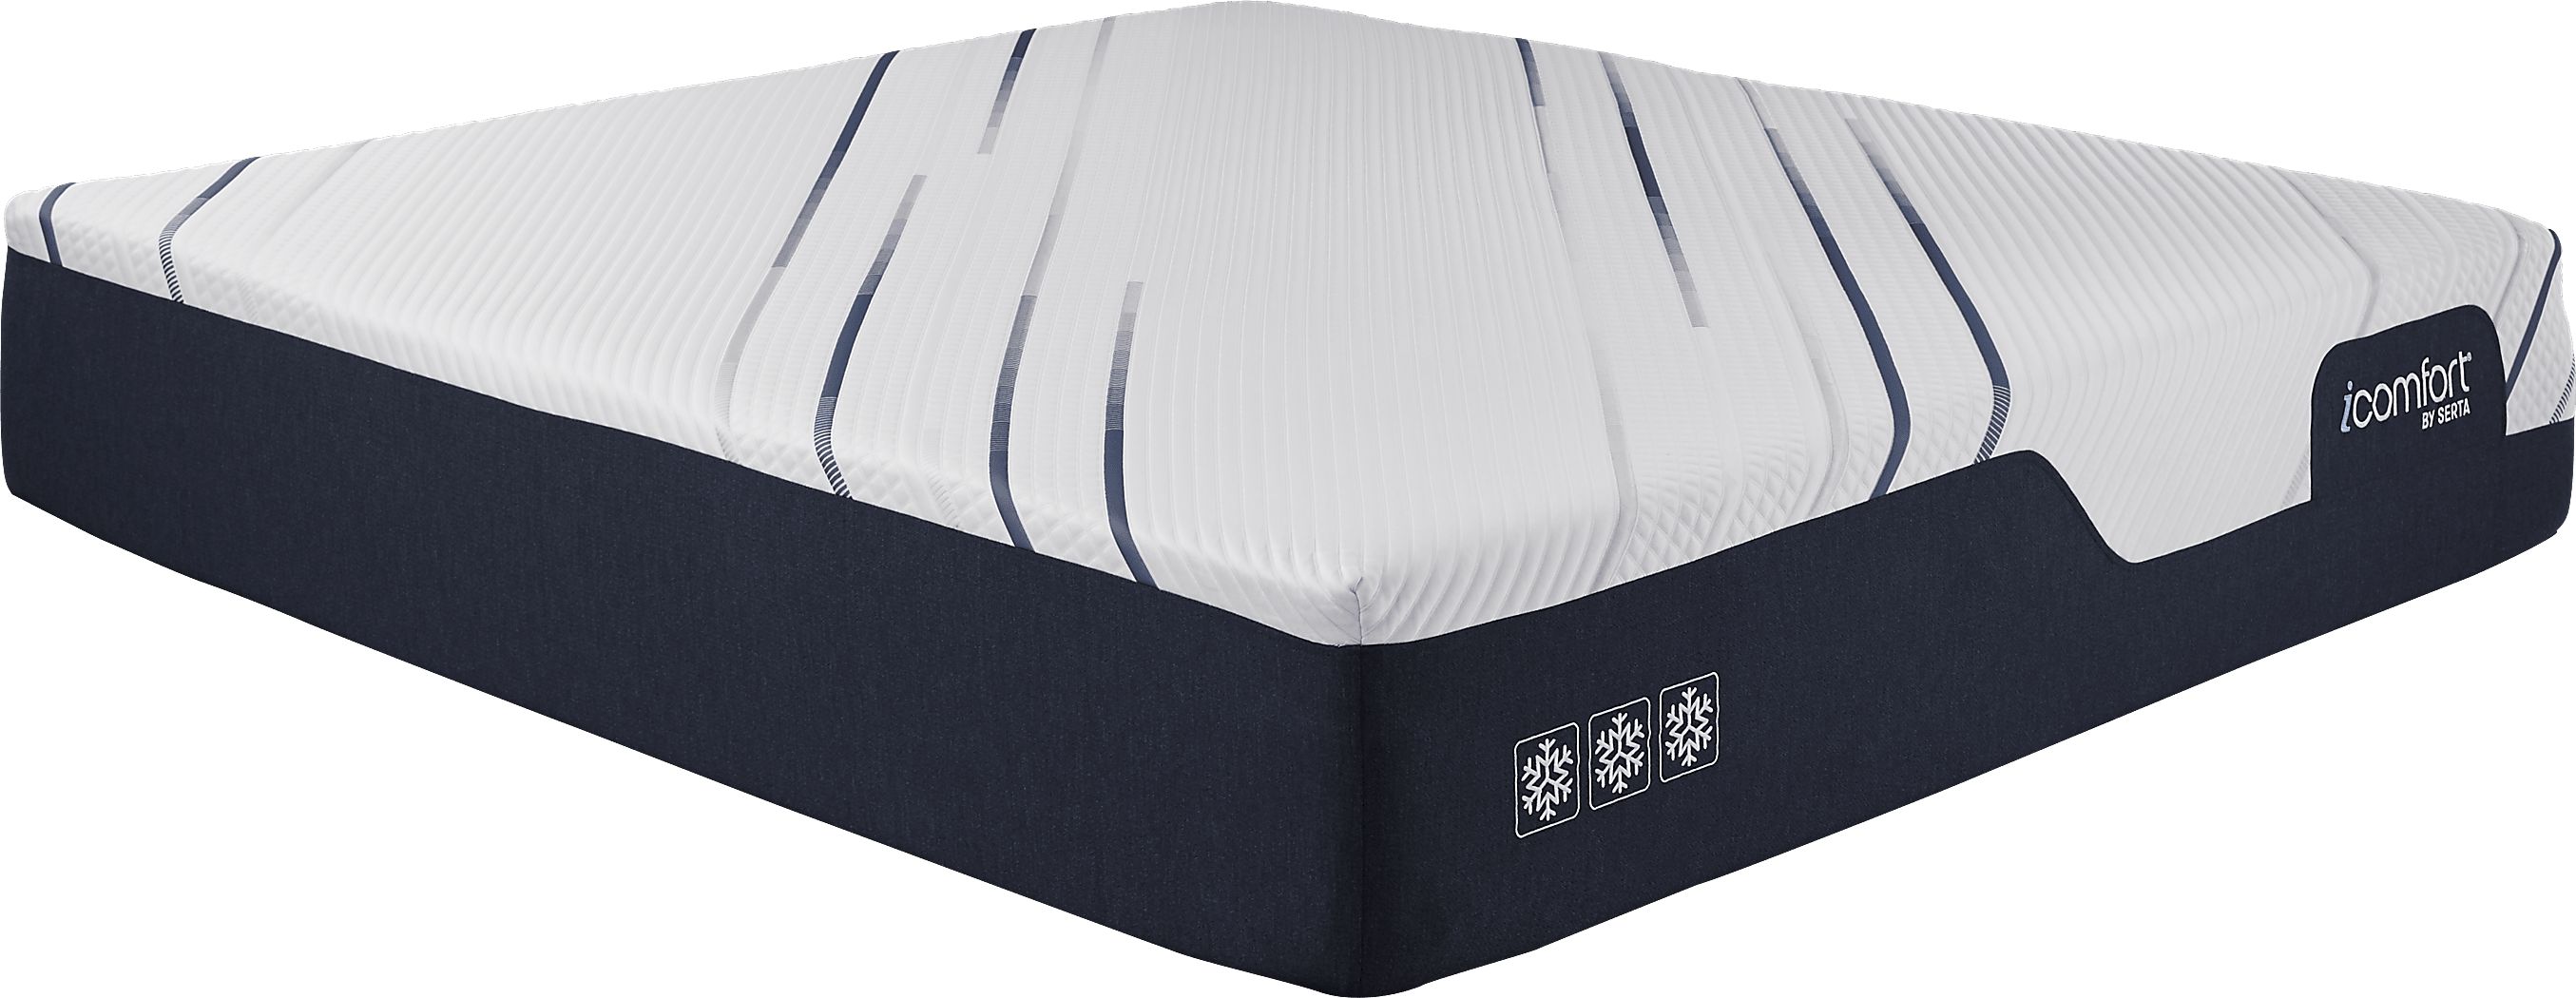 serta icomfort king mattress dimensions